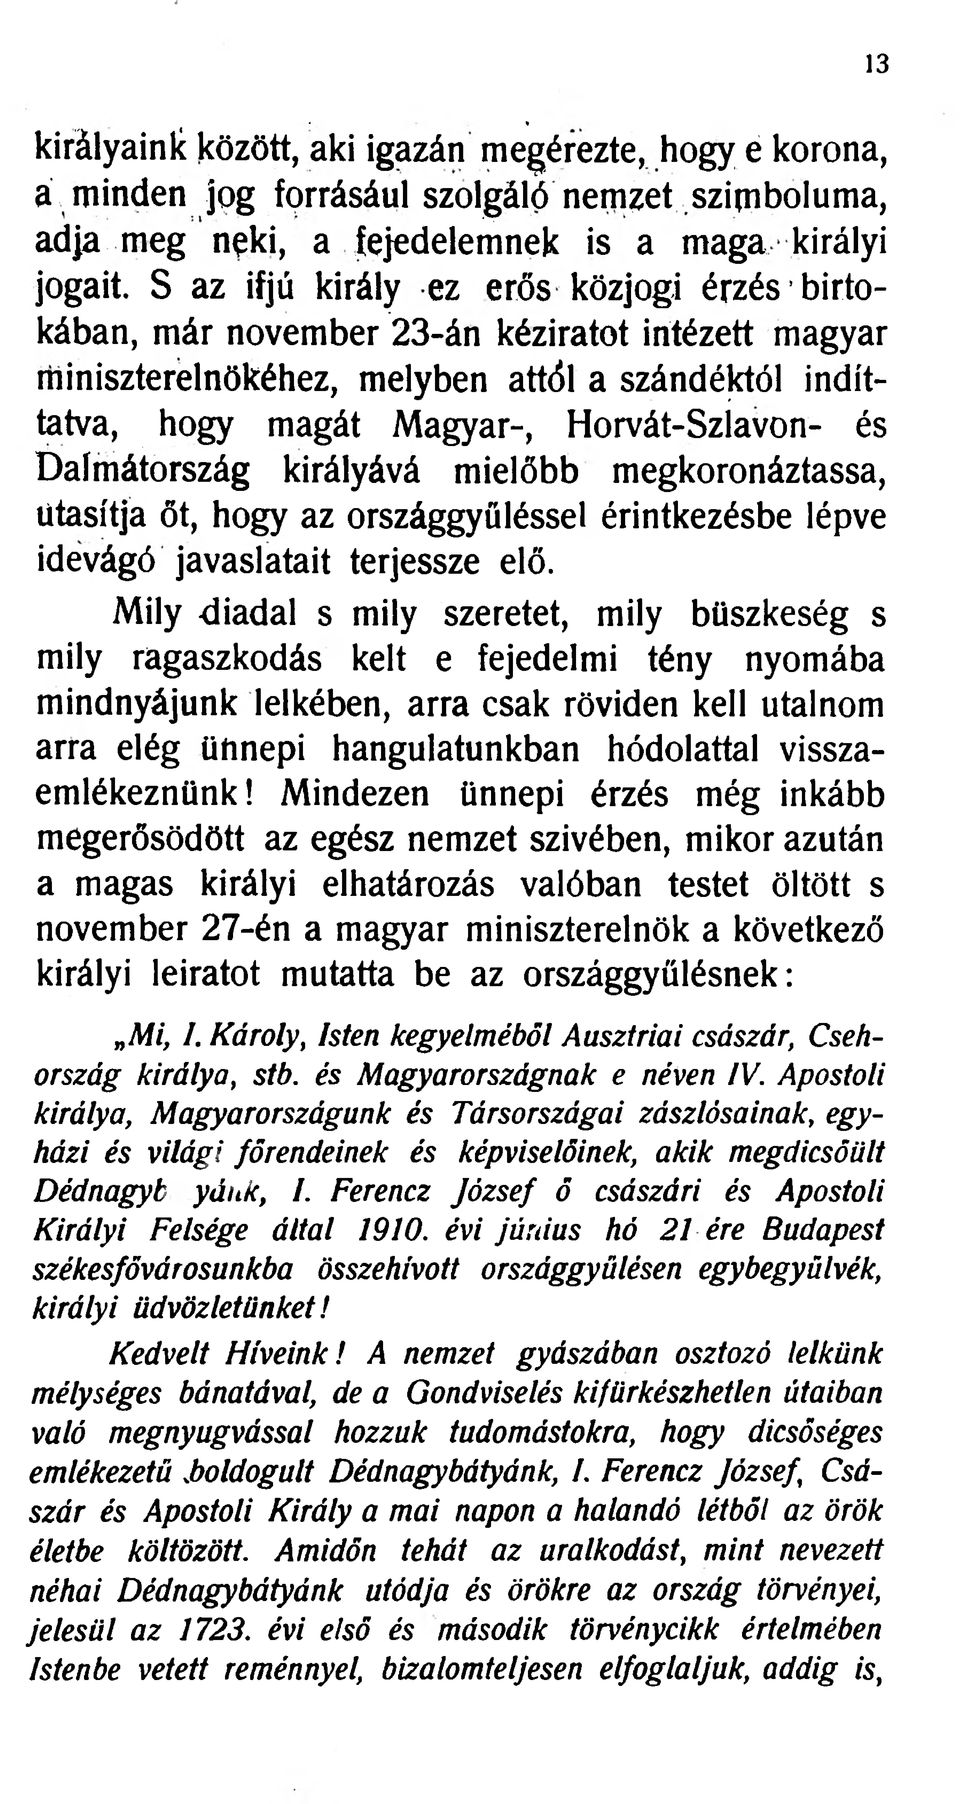 * 4 Dalmátország királyává mielőbb megkoronáztassa, utasítja őt, hogy az országgyűléssel érintkezésbe lépve idevágó javaslatait terjessze elő.